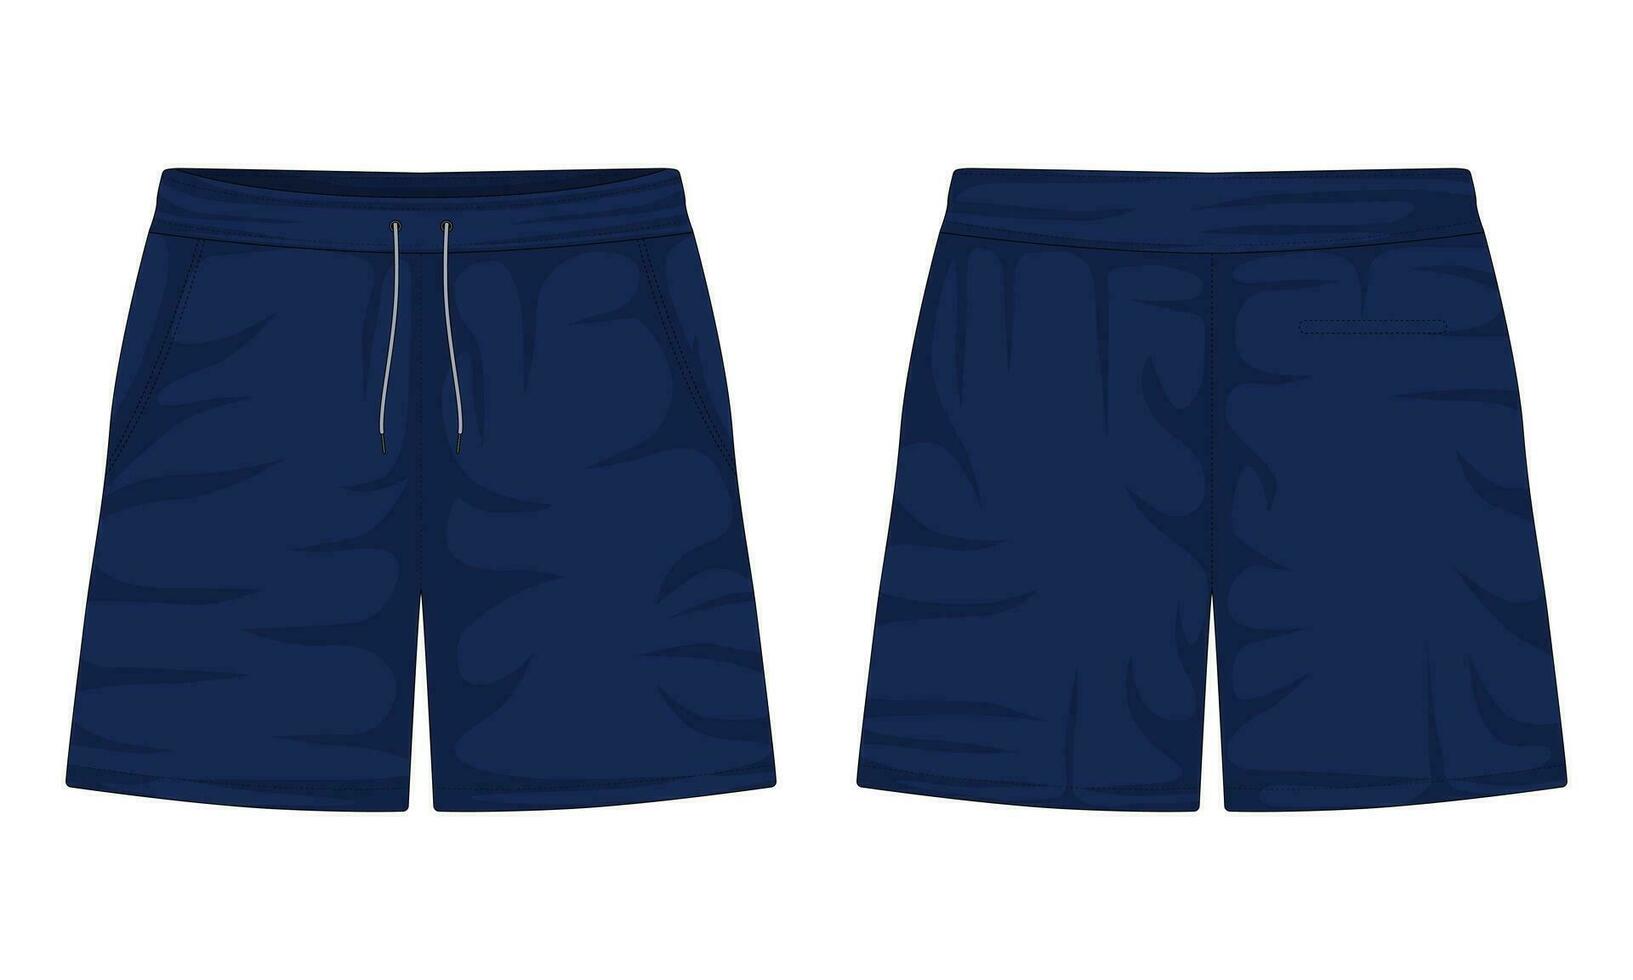 joggingbroek voorkant en terug visie. sport- korte broek. marine blauw gewoontjes korte broek. vector illustratie